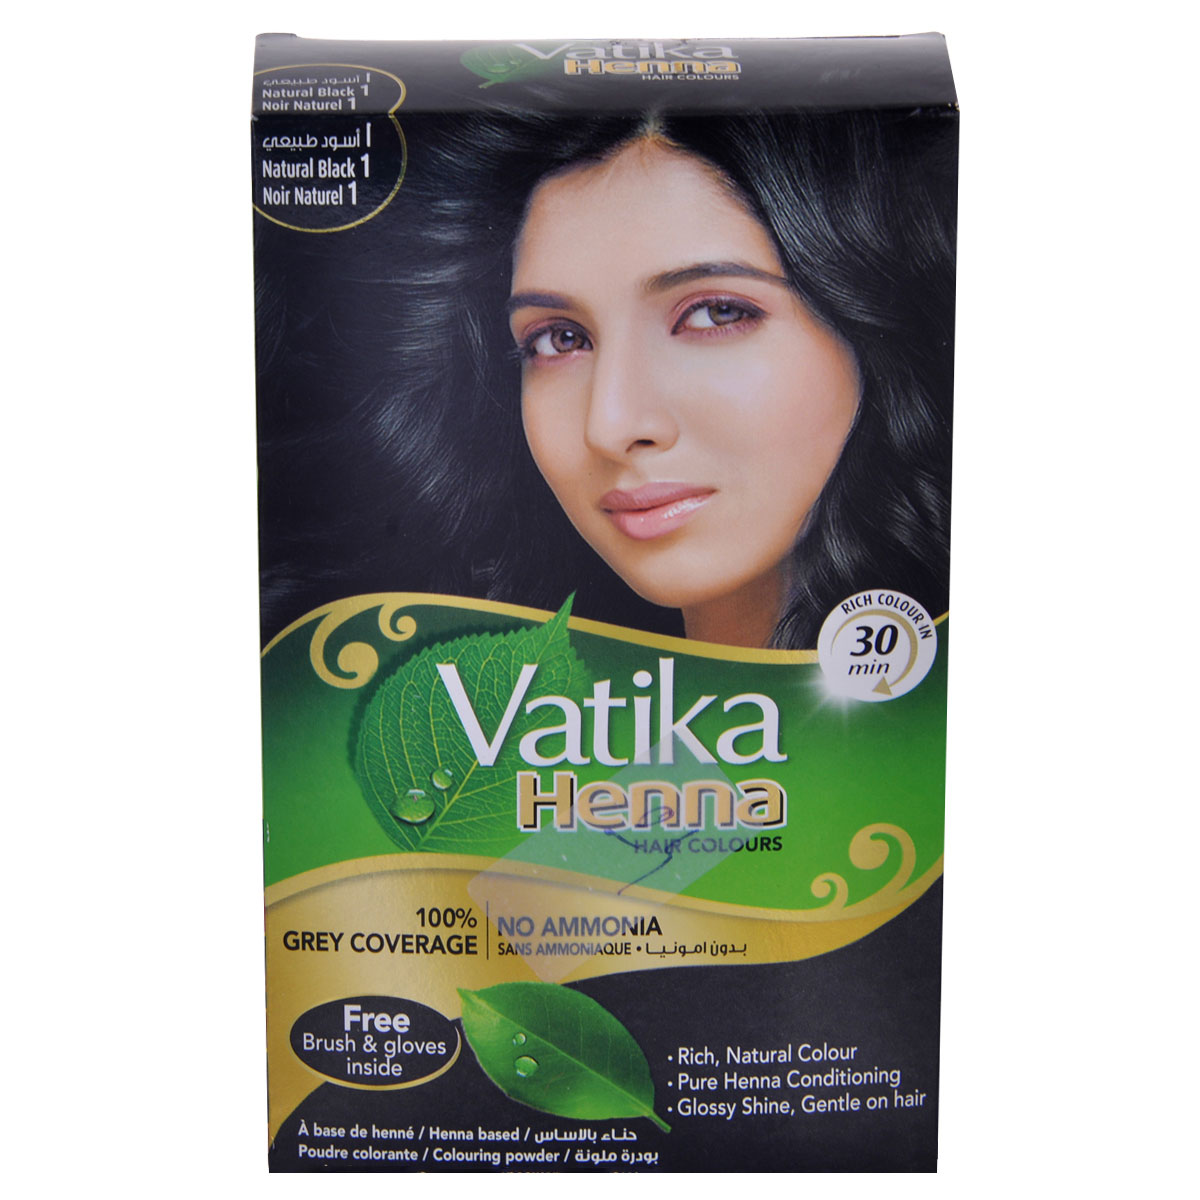 Vatika Henna Hair Dye - Natural black